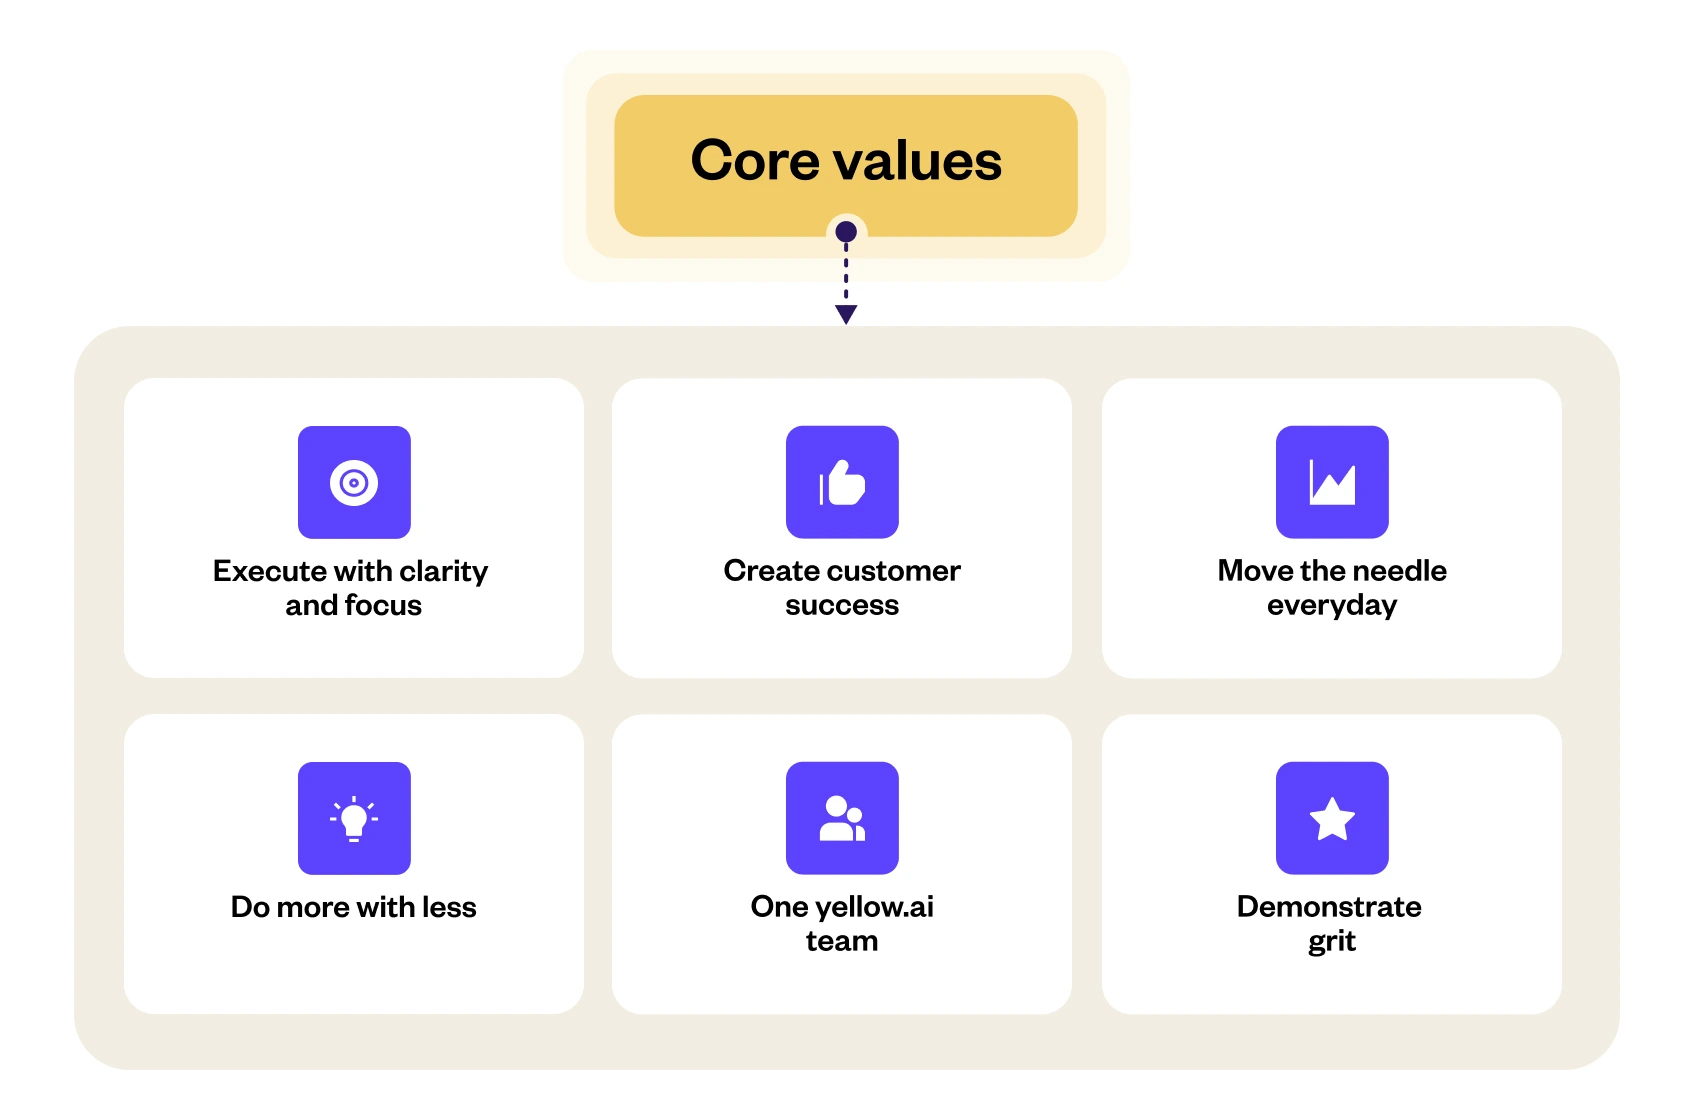 Yellow.ai - core values